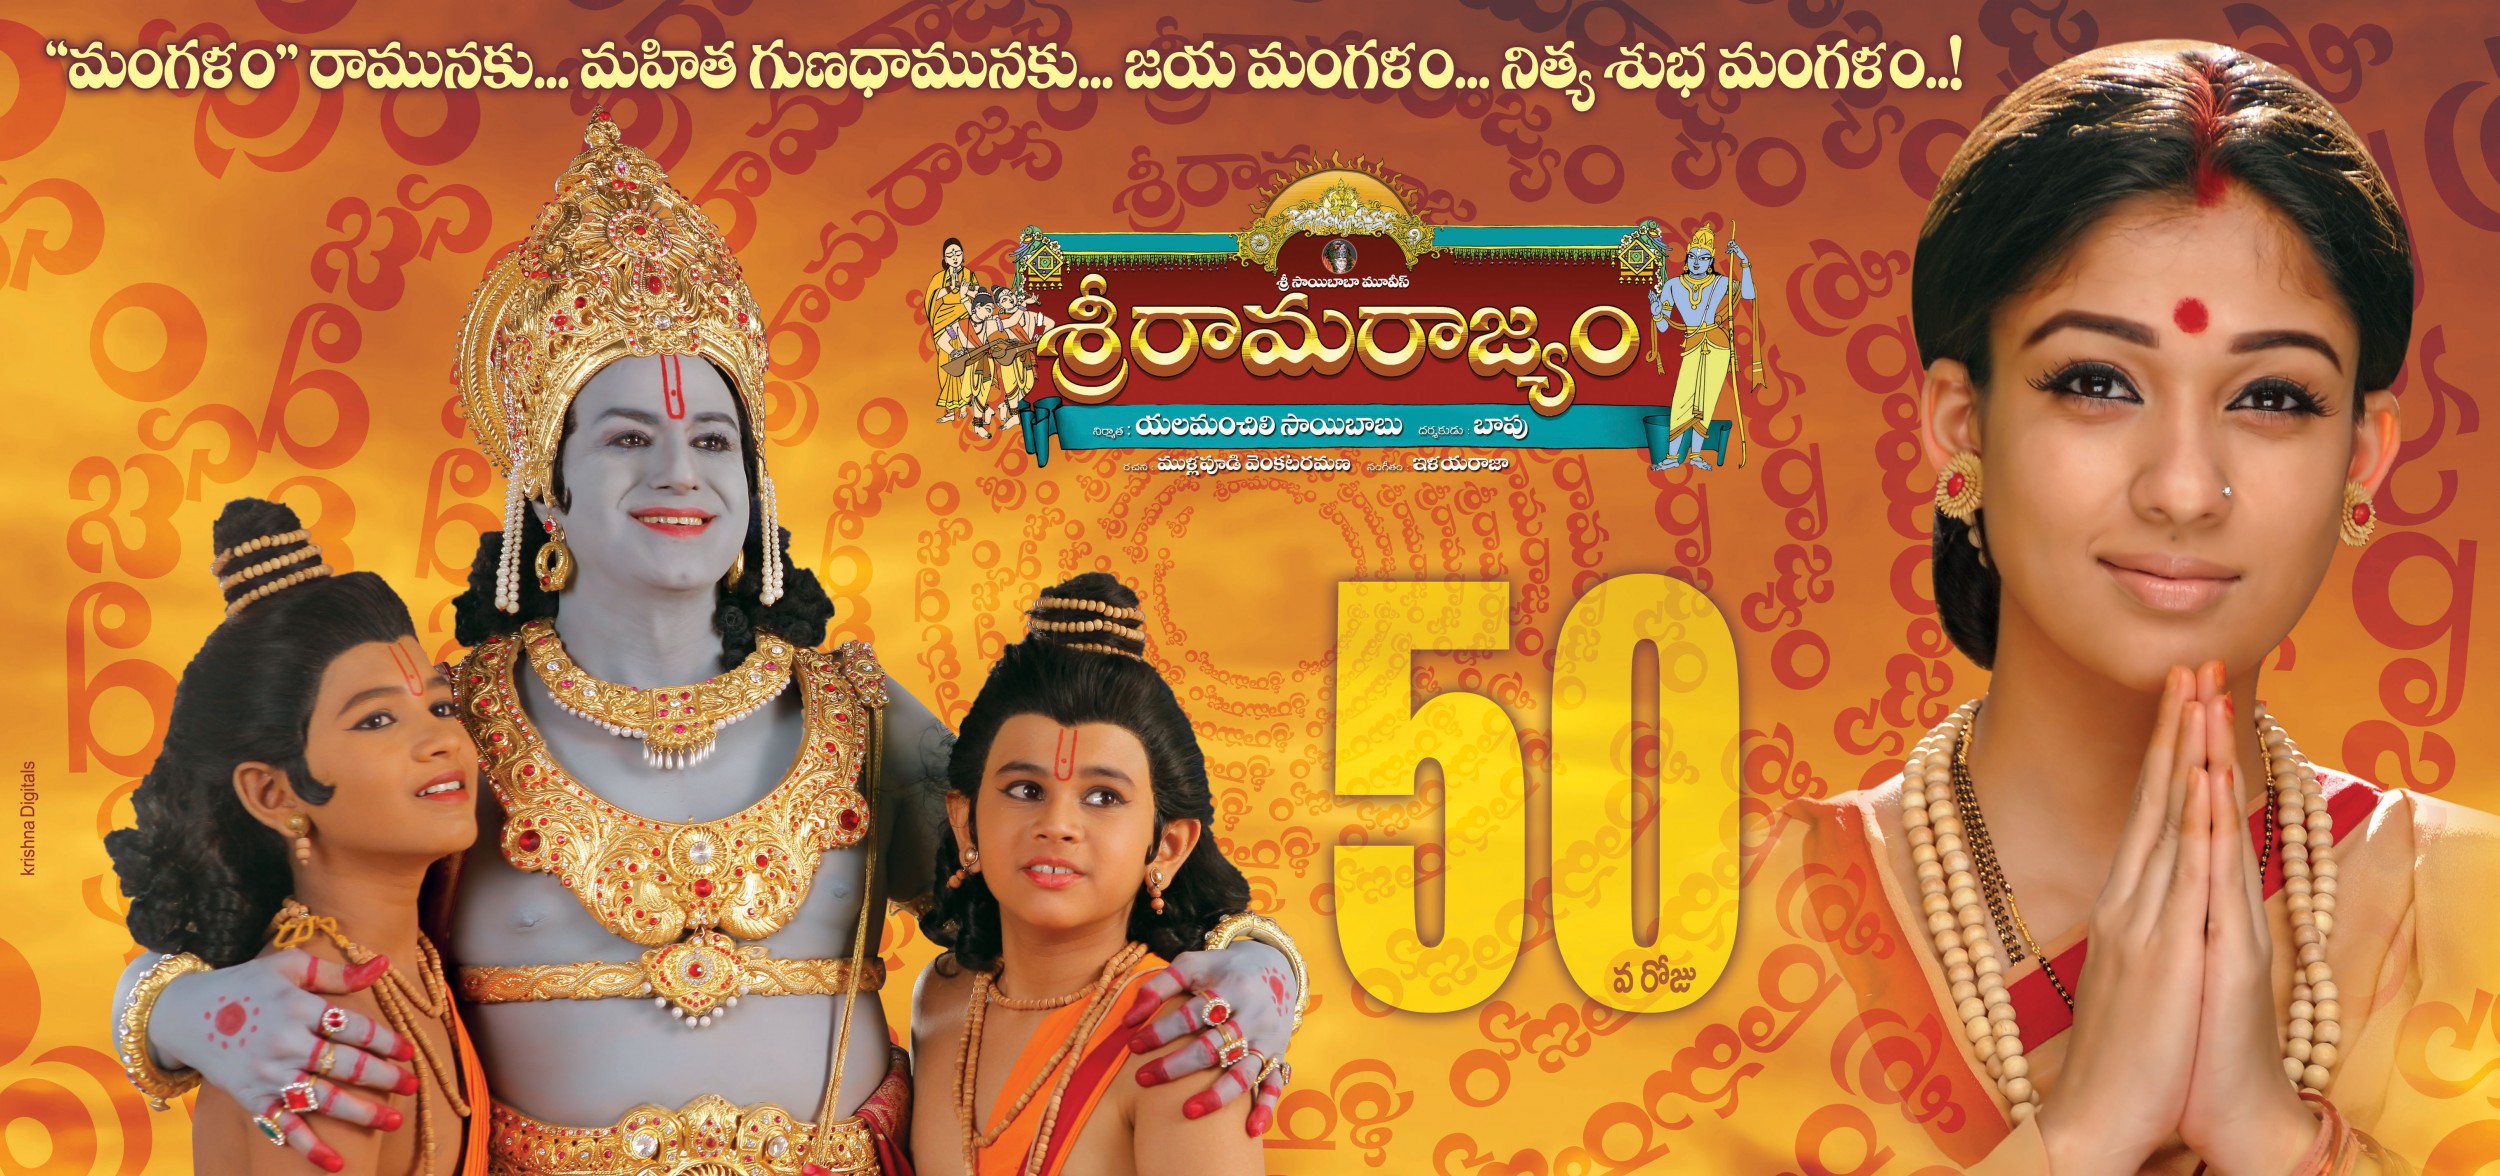 Mega Sized Movie Poster Image for Sri Rama Rajyam (#2 of 10)